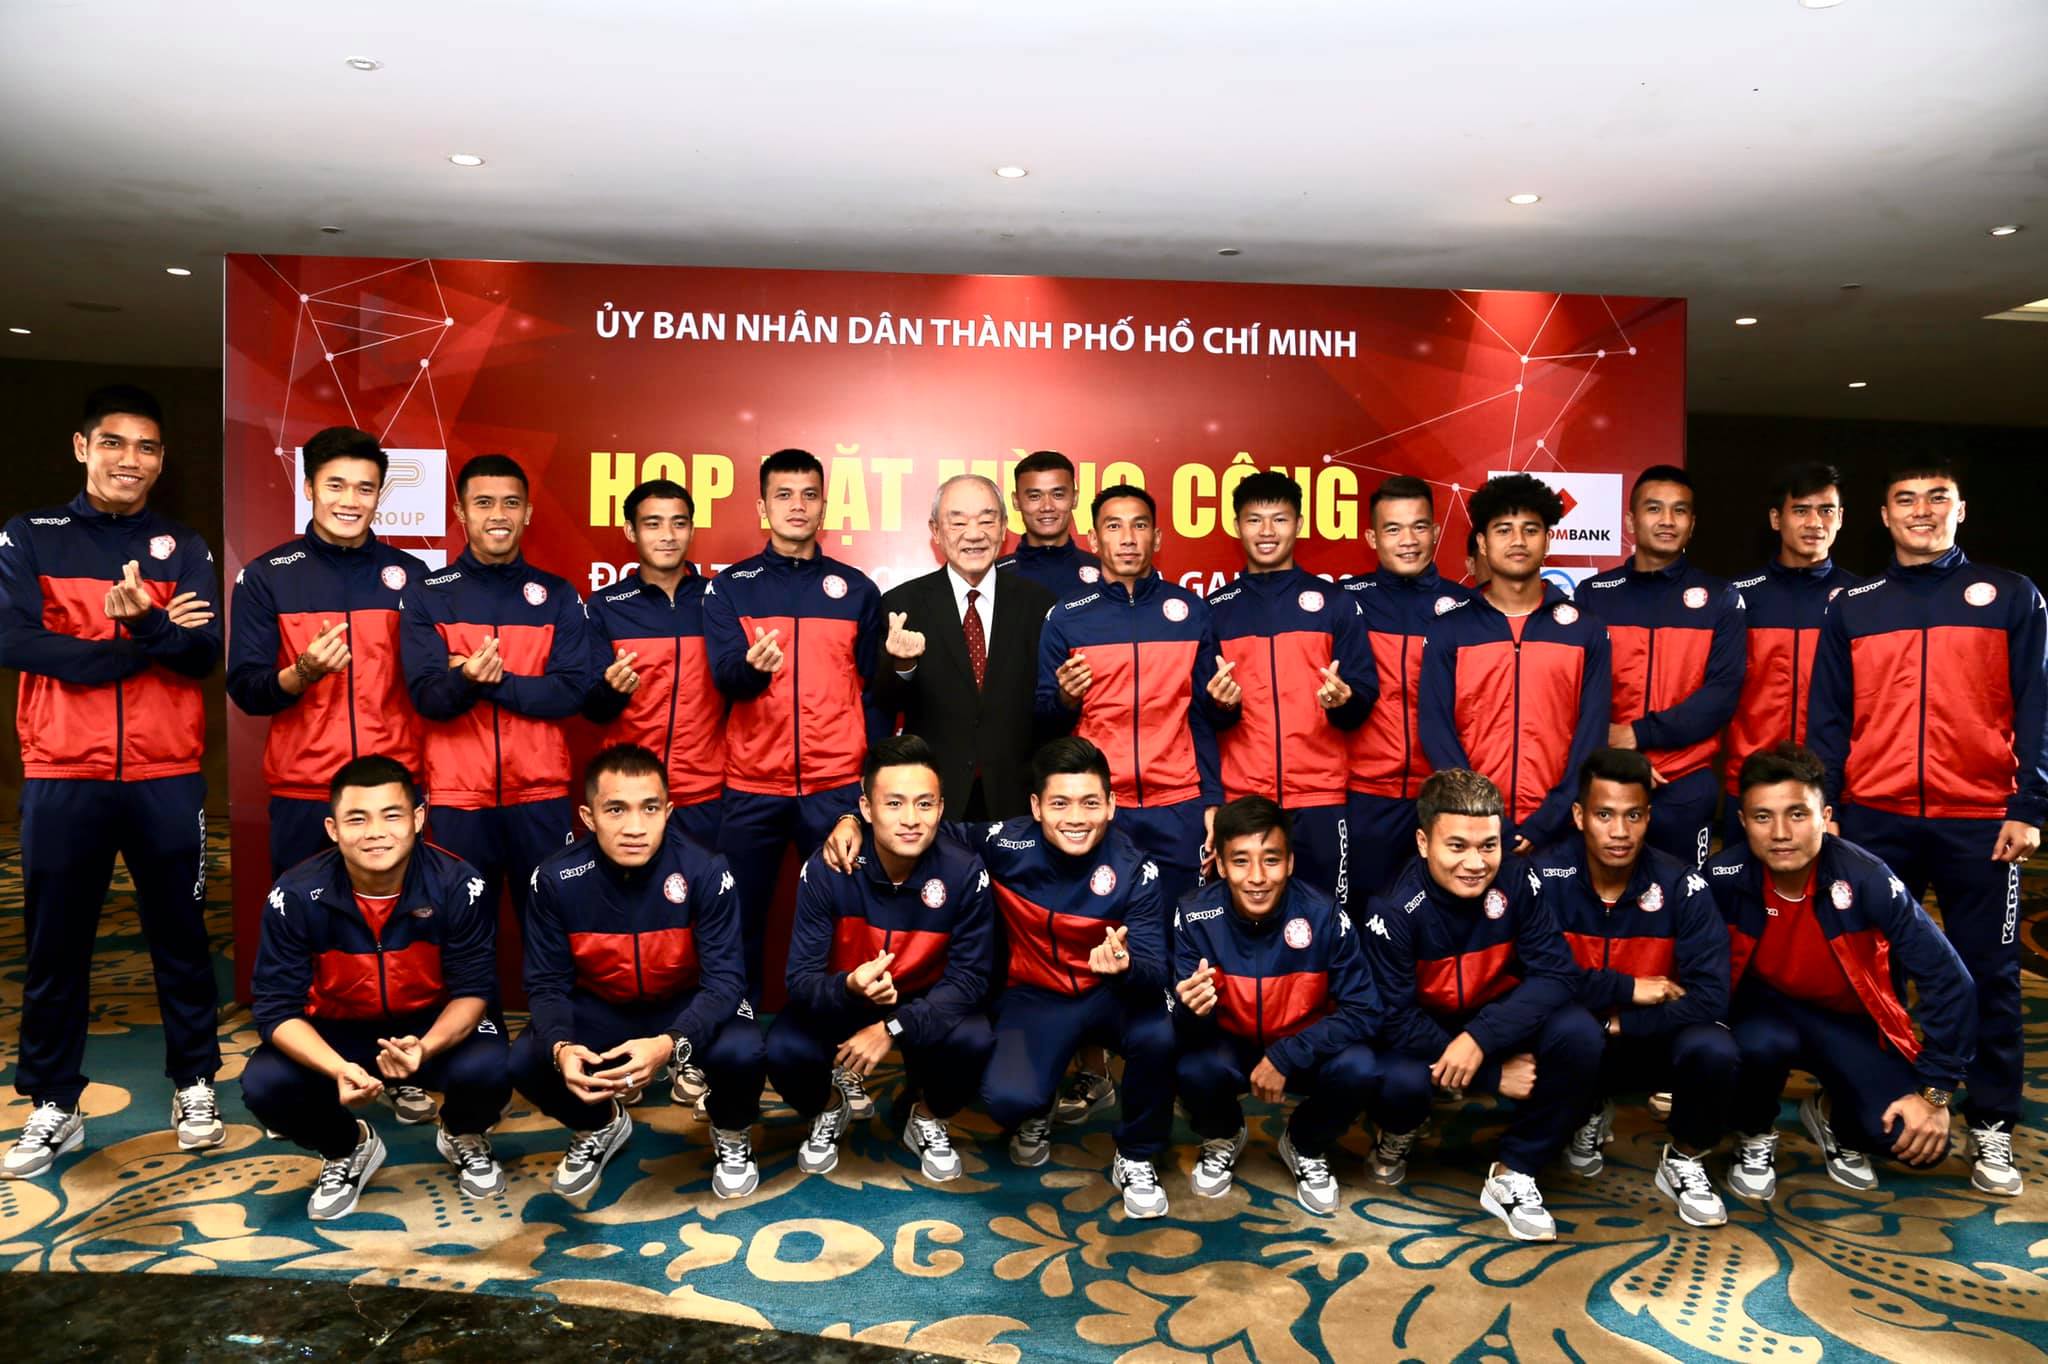 Vỡ oà với 10 sự kiện nổi bật của bóng đá Việt Nam trong năm 2019 - Bóng Đá